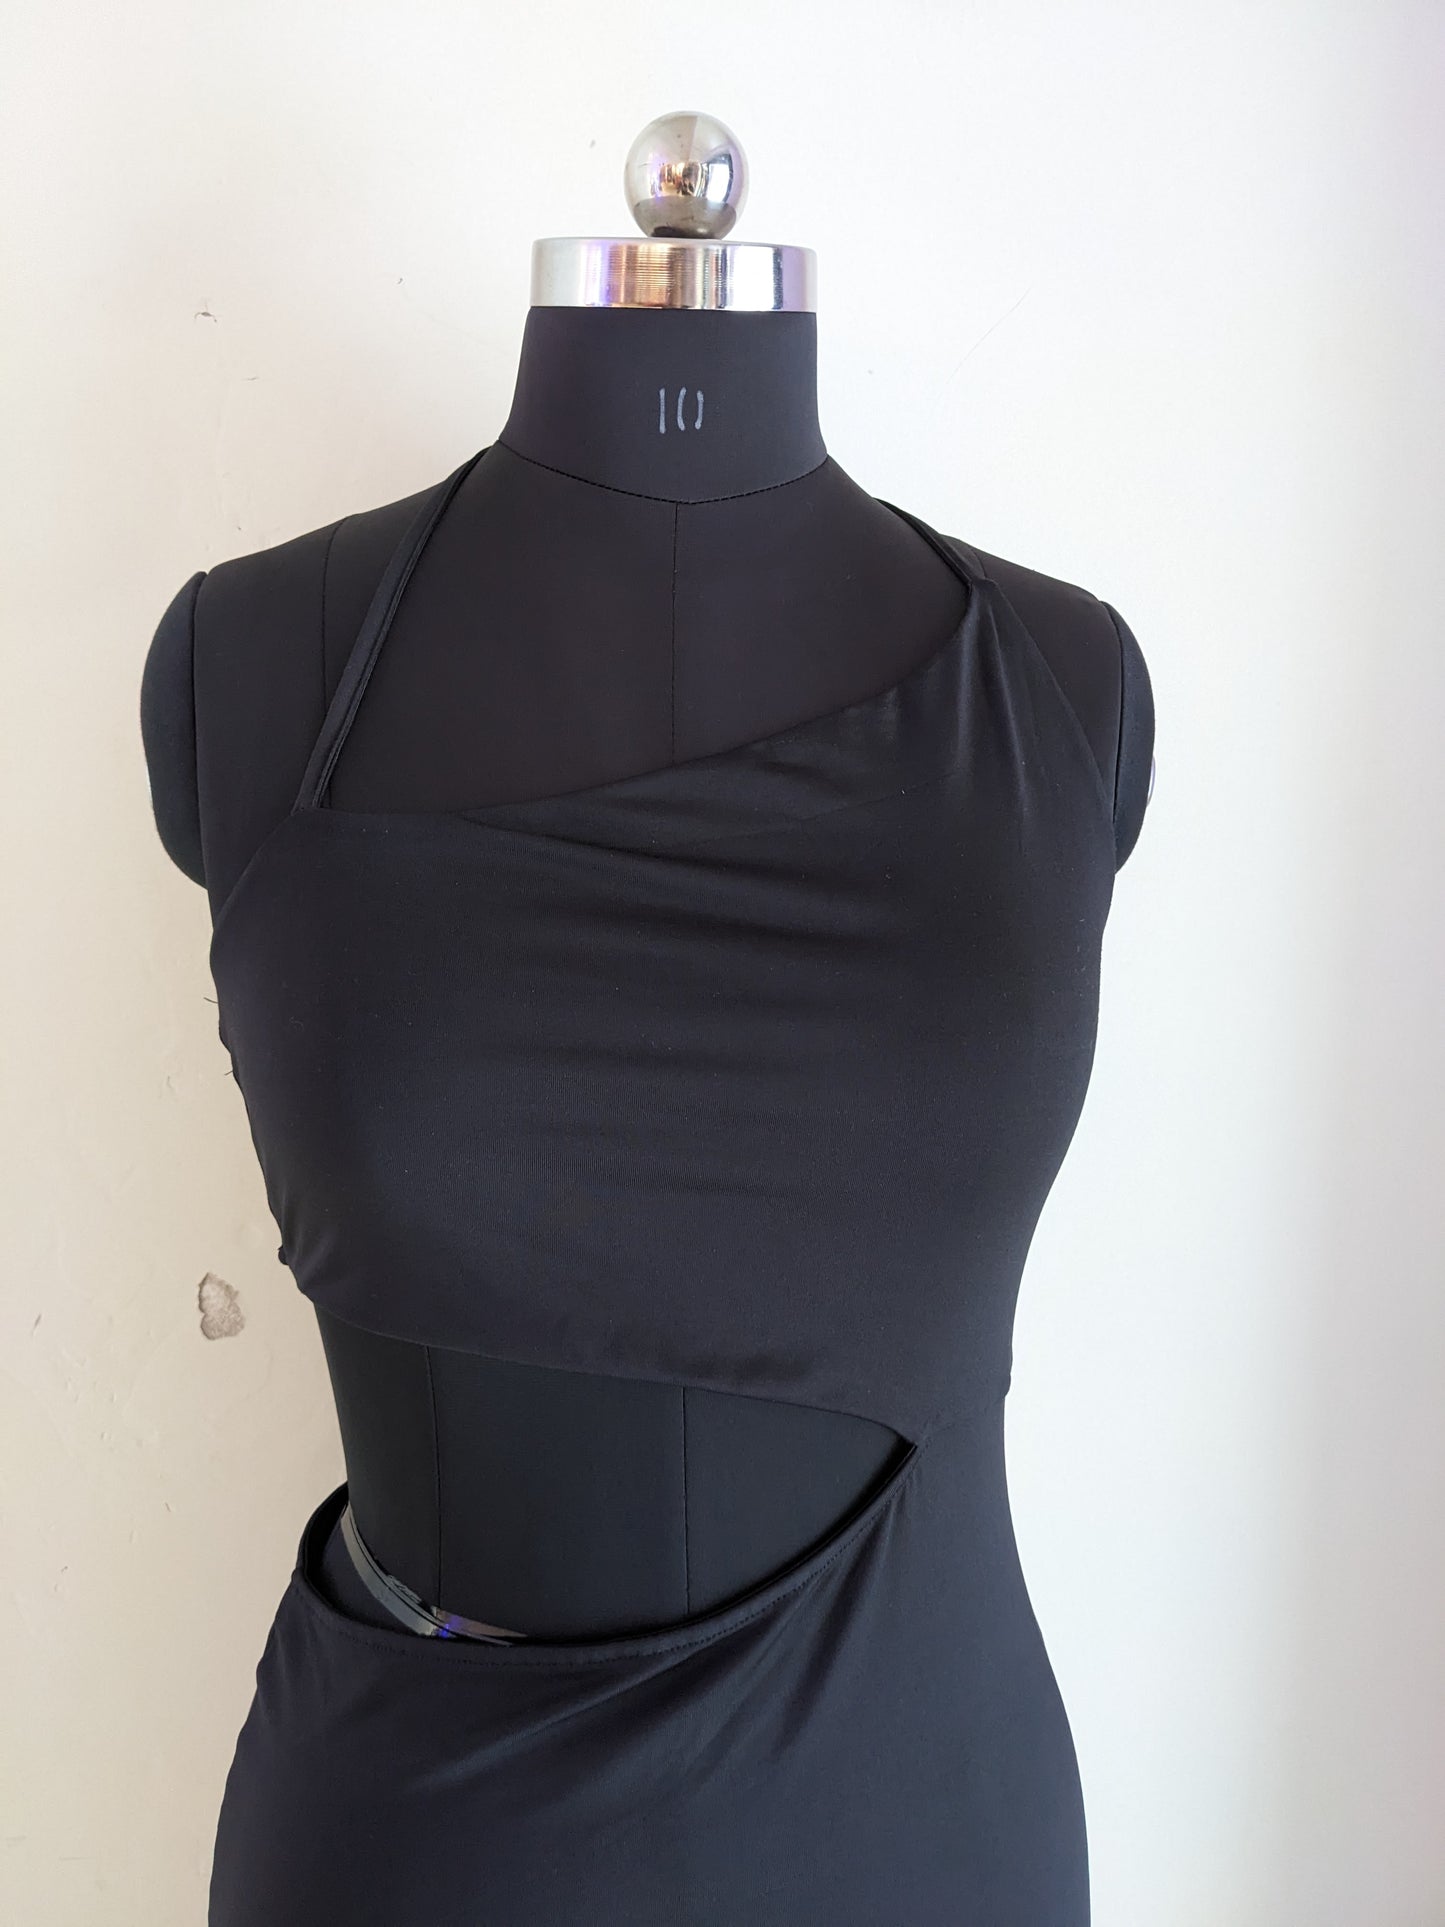 H&M One Shoulder Cut Out Black Dress